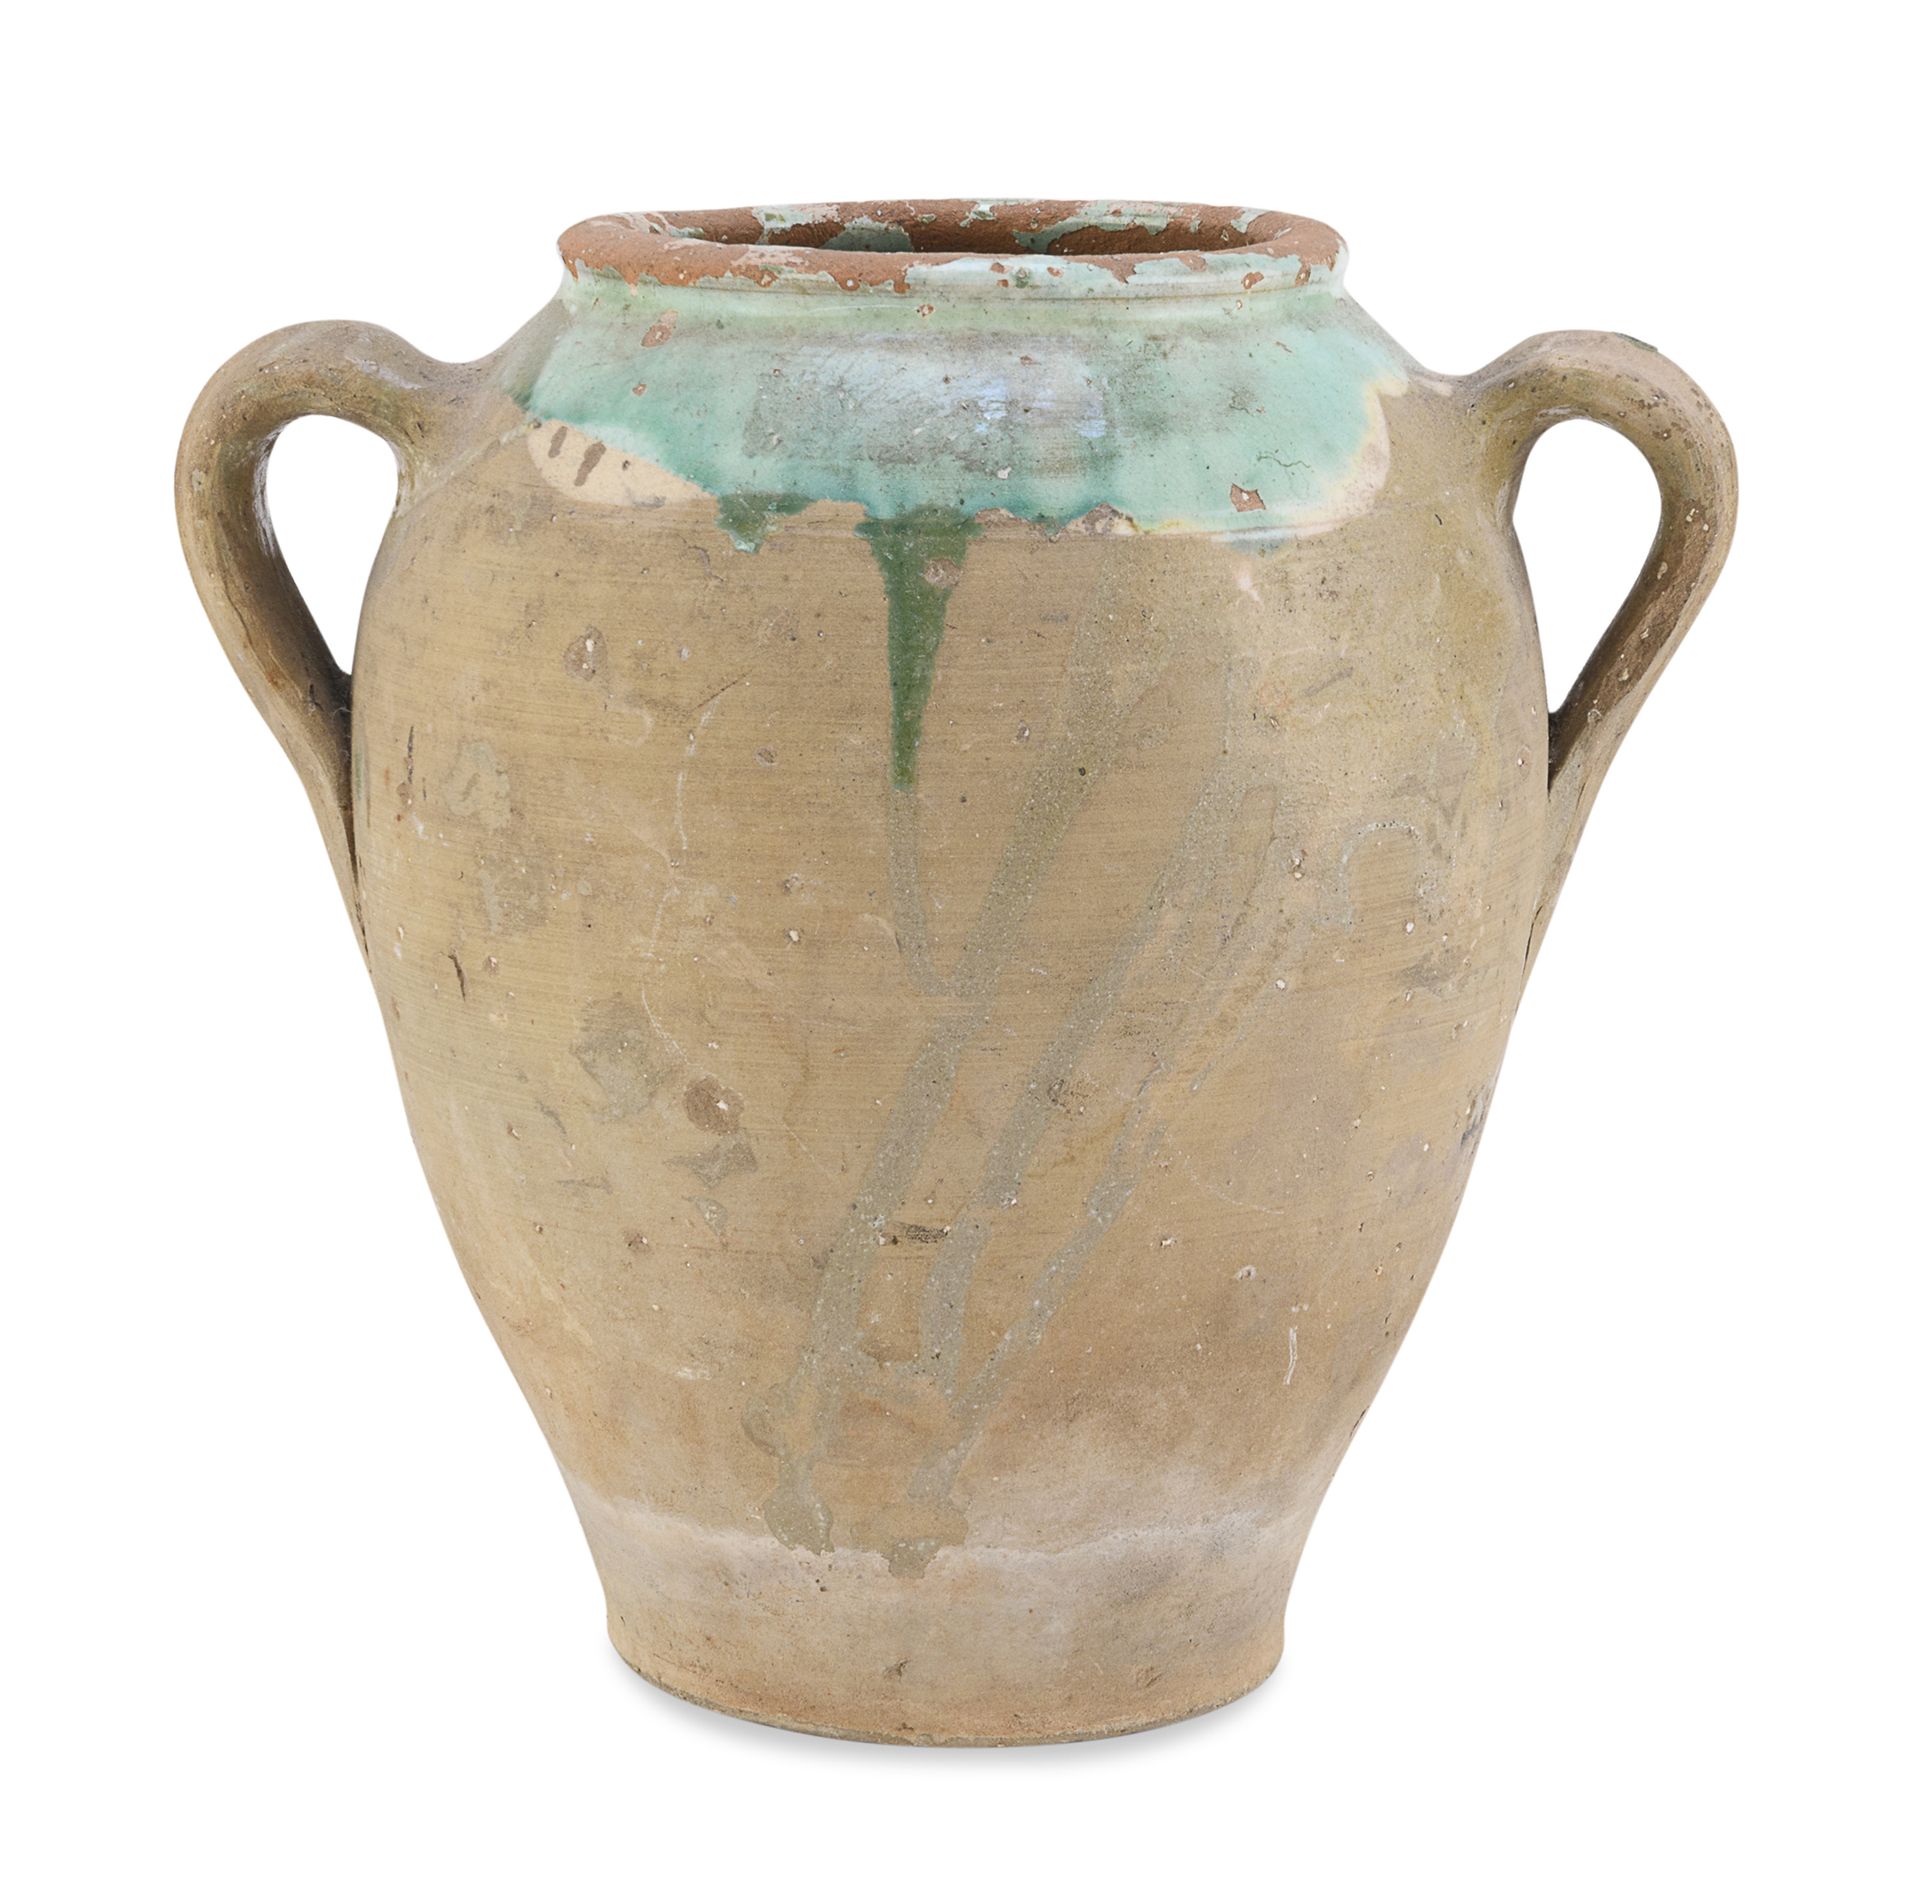 Null 陶器卡帕萨，普格利 19世纪末


肩部有部分绿色釉面。丝带手柄。


尺寸为22 x 24 x 18厘米。